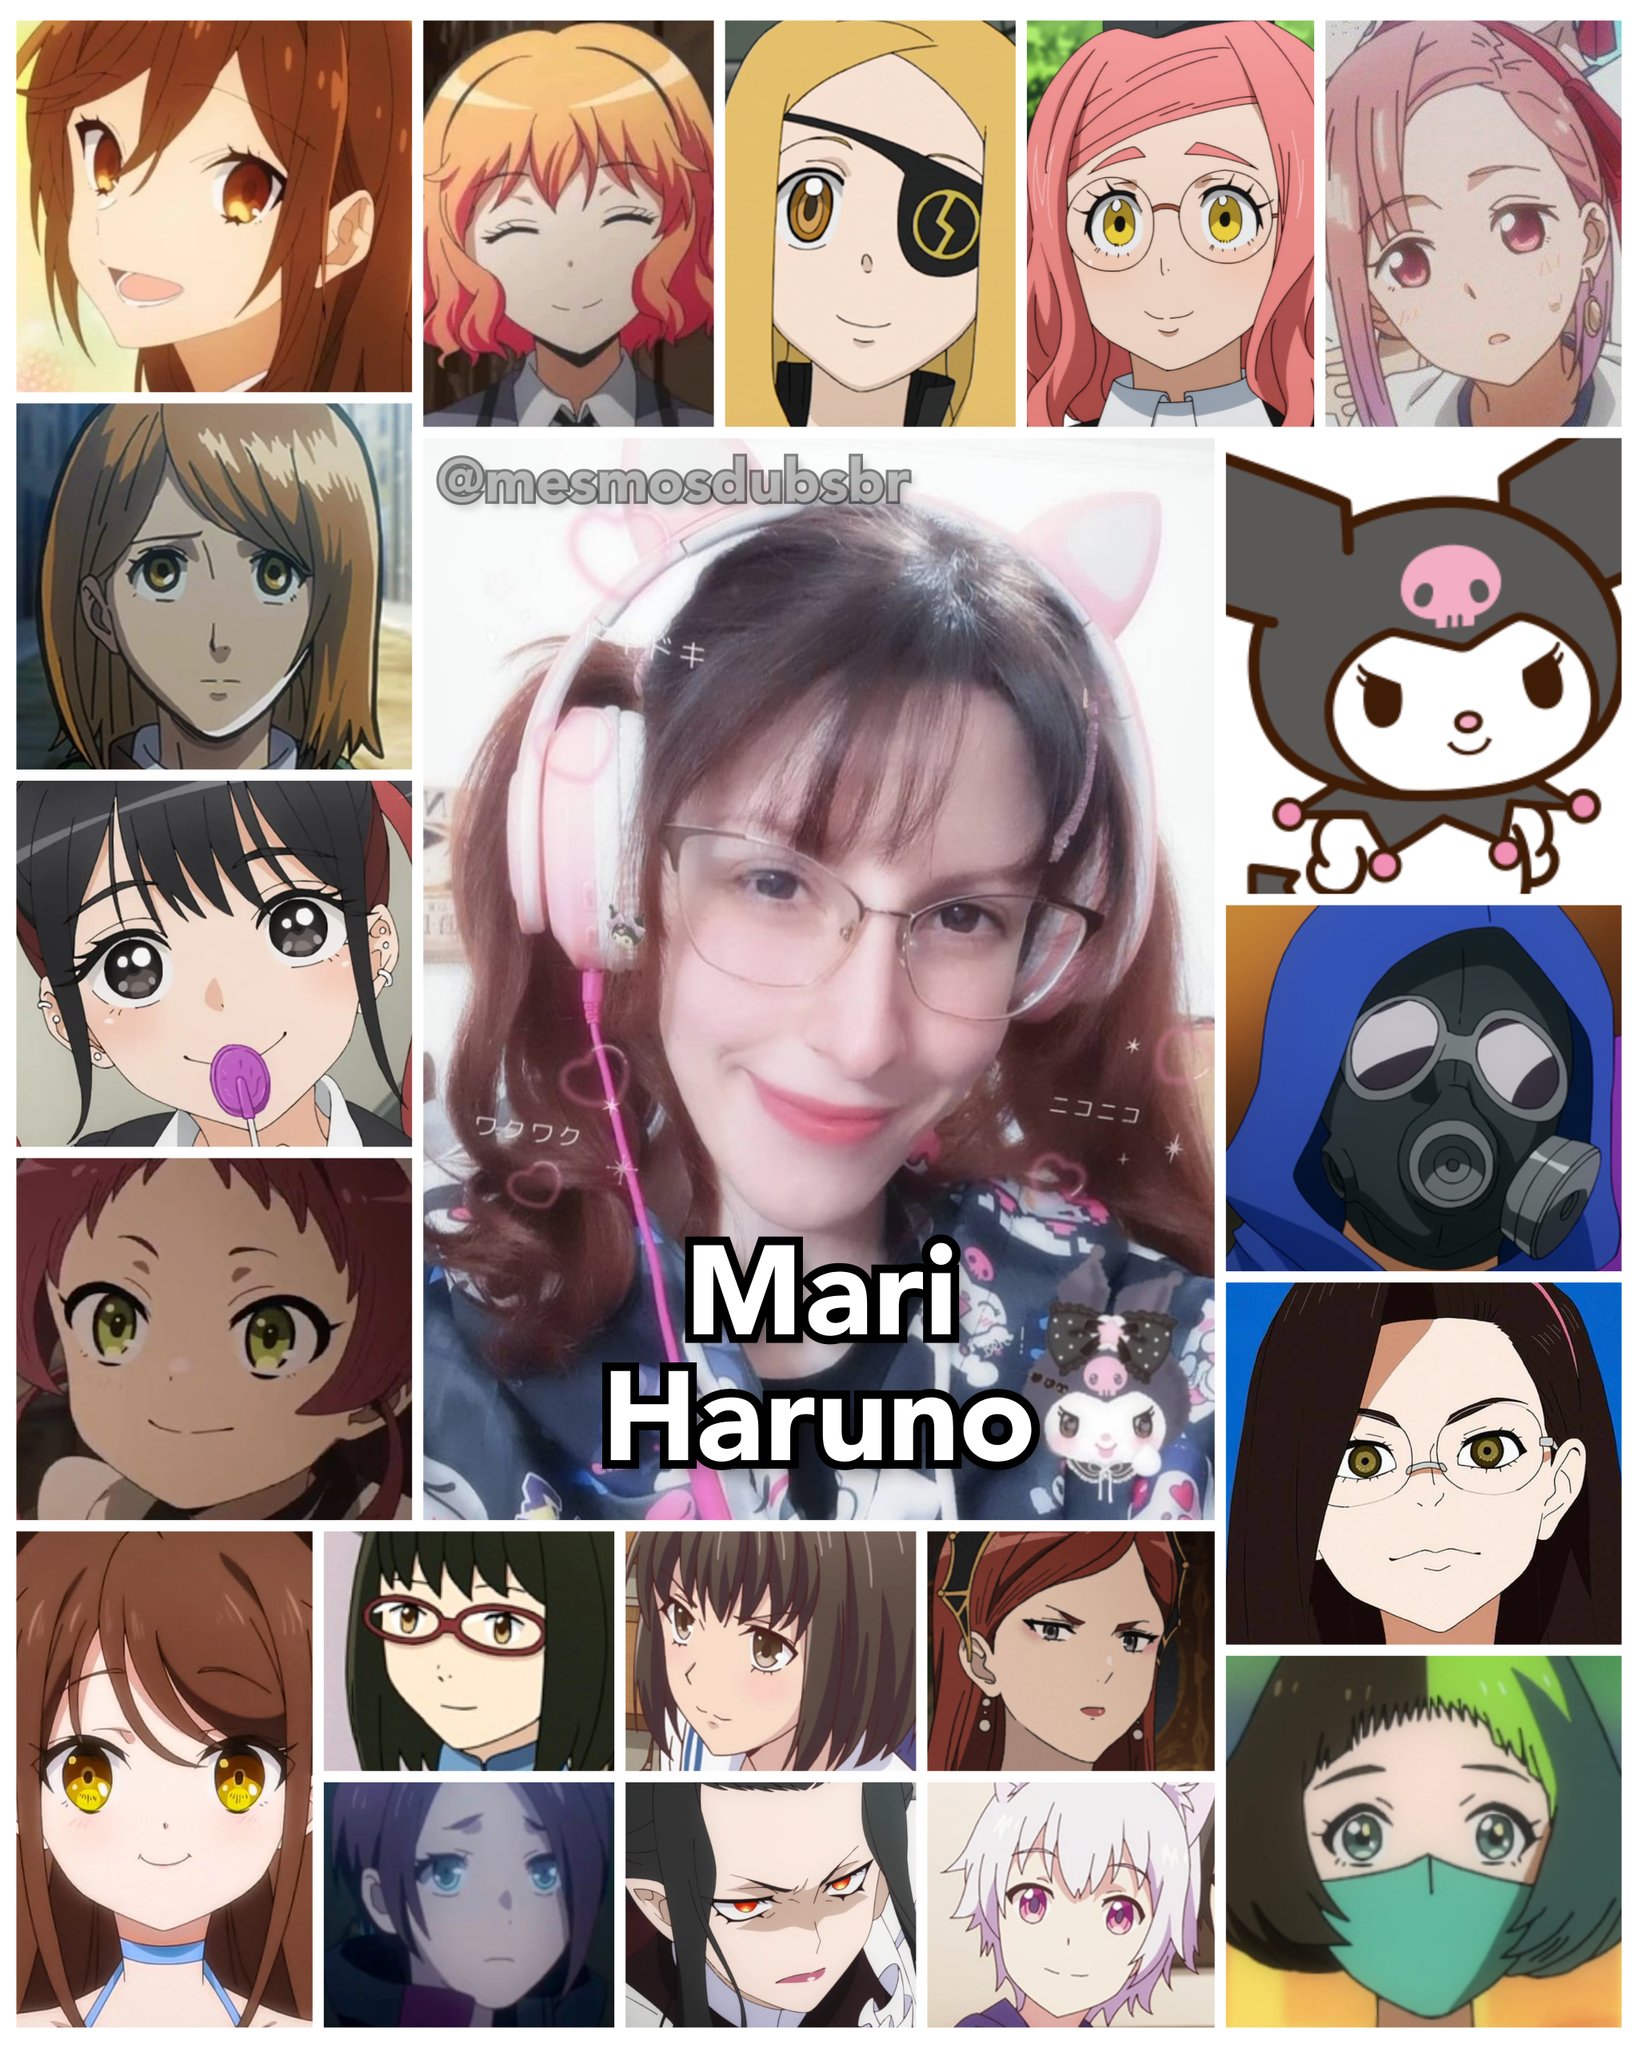 Personagens Com os Mesmos Dubladores! on X: Da geração recente de  dubladores de anime, a talentosa Mari Haruno tem trabalhos muito bons e  também é cosplayer! Mari é conhecida por dublar a